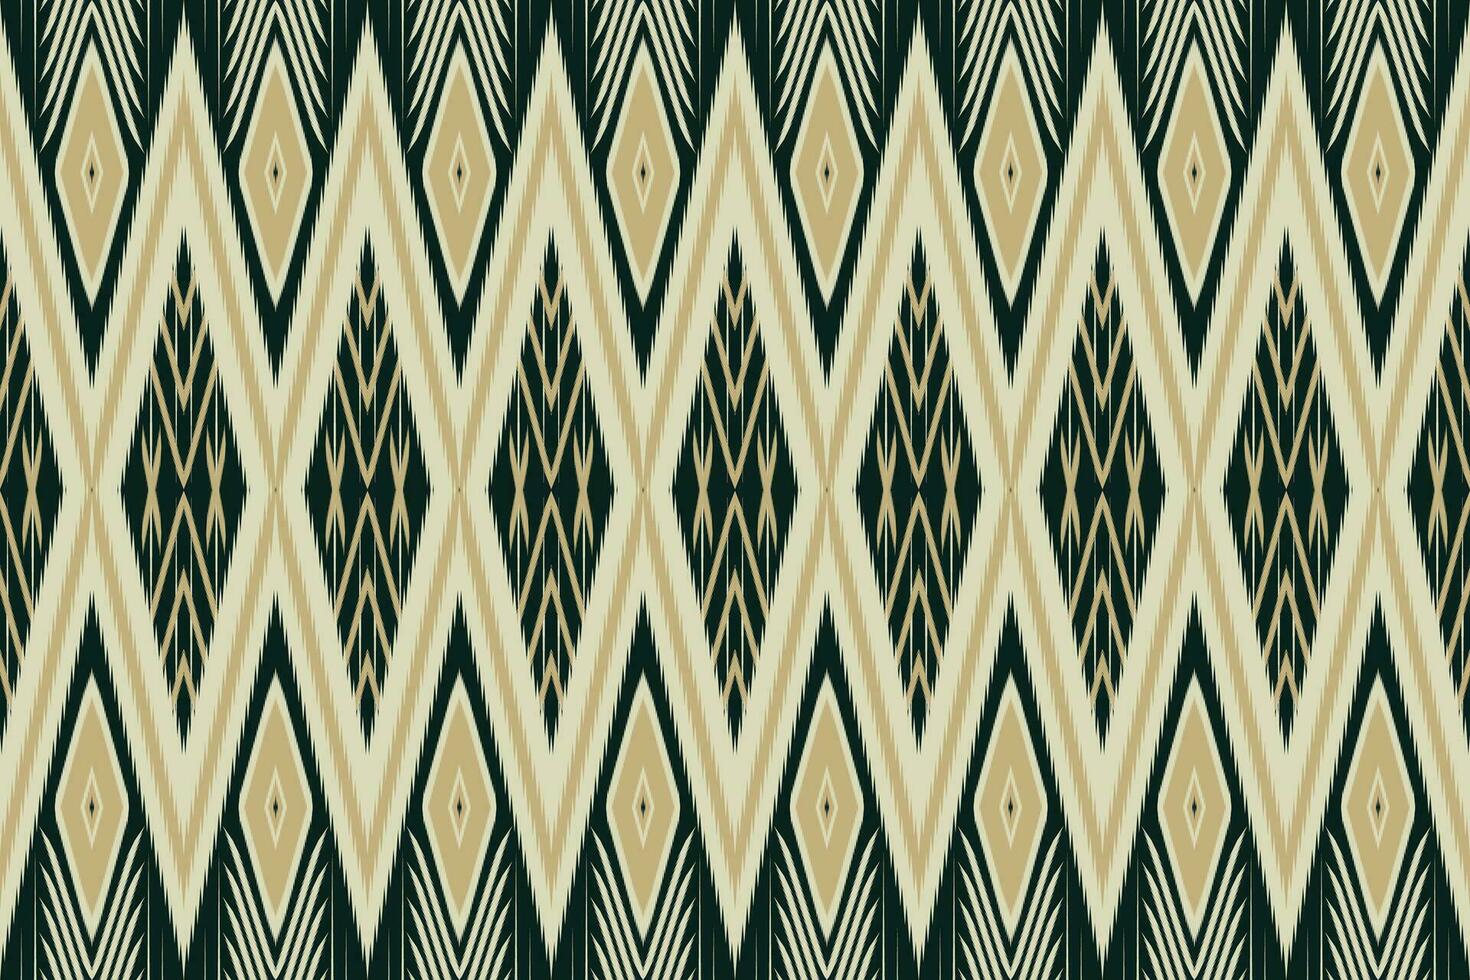 geometrico patchwork etnico modello vettore per tribale boho carta da parati,avvolgimento,moda,tappeto,abbigliamento,maglieria,batik,illustrazione.etnico astratto ikat.